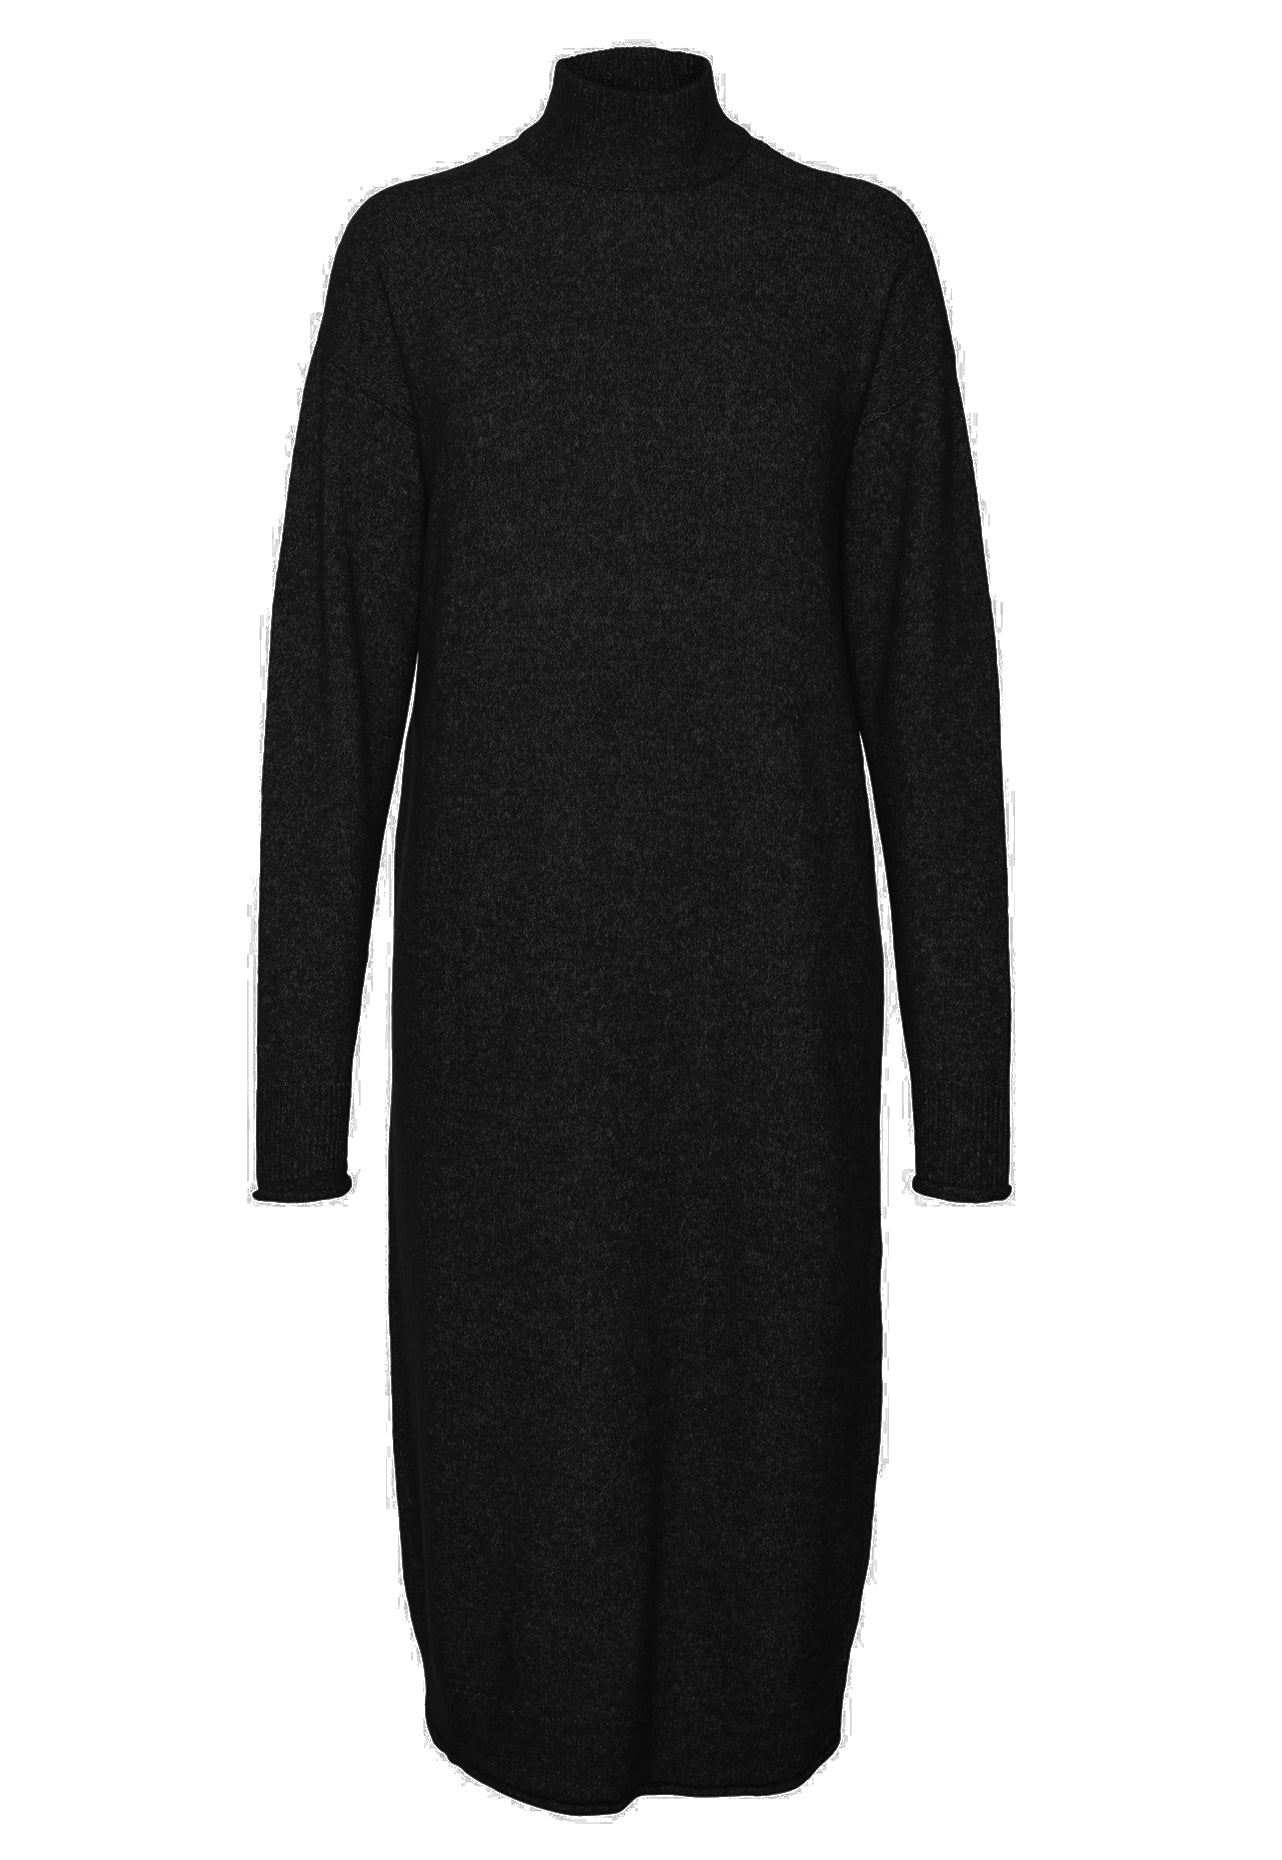 VILA Kaden Long Sleeve Funnel Neck Knitted Midi Jumper Dress in Black - One Nation Clothing